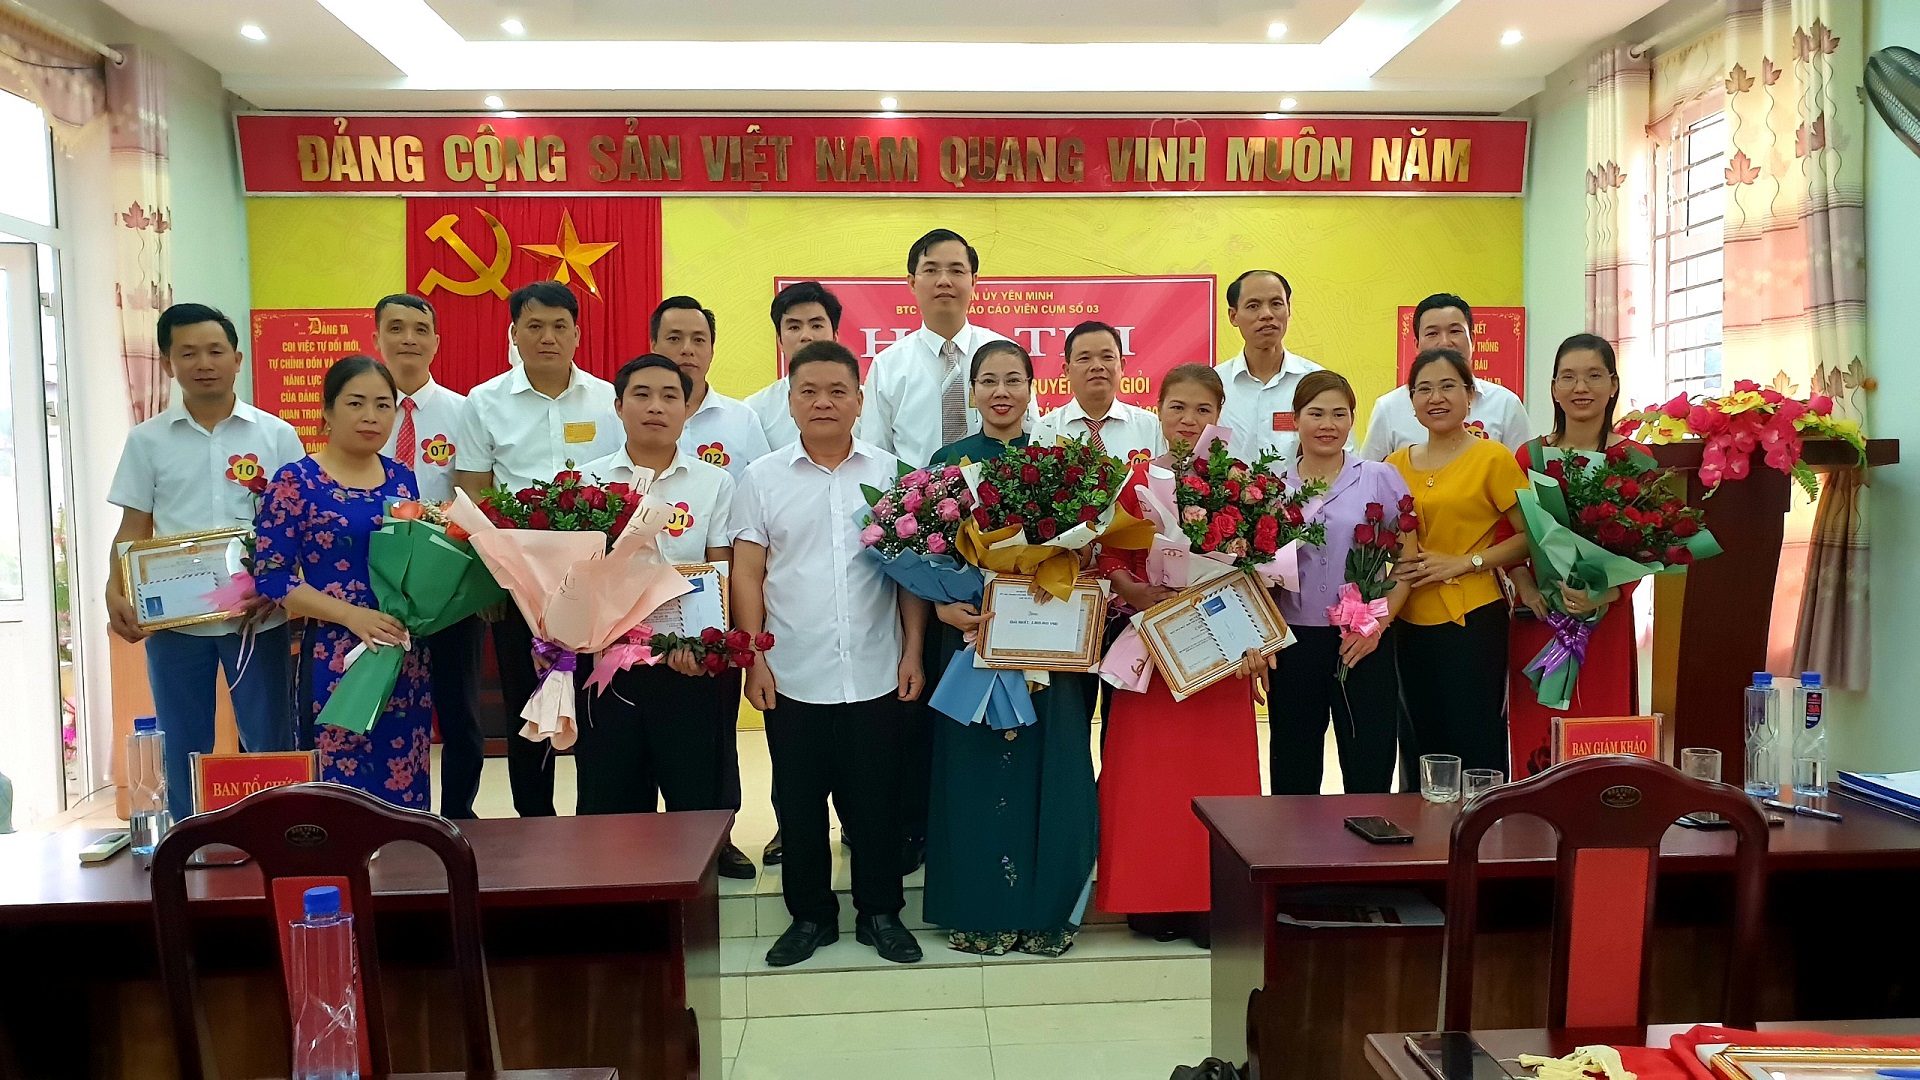 Cụm các khối cơ quan thuộc UBND huyện Yên Minh tổ chức Hội thi báo cáo viên giỏi năm 2021